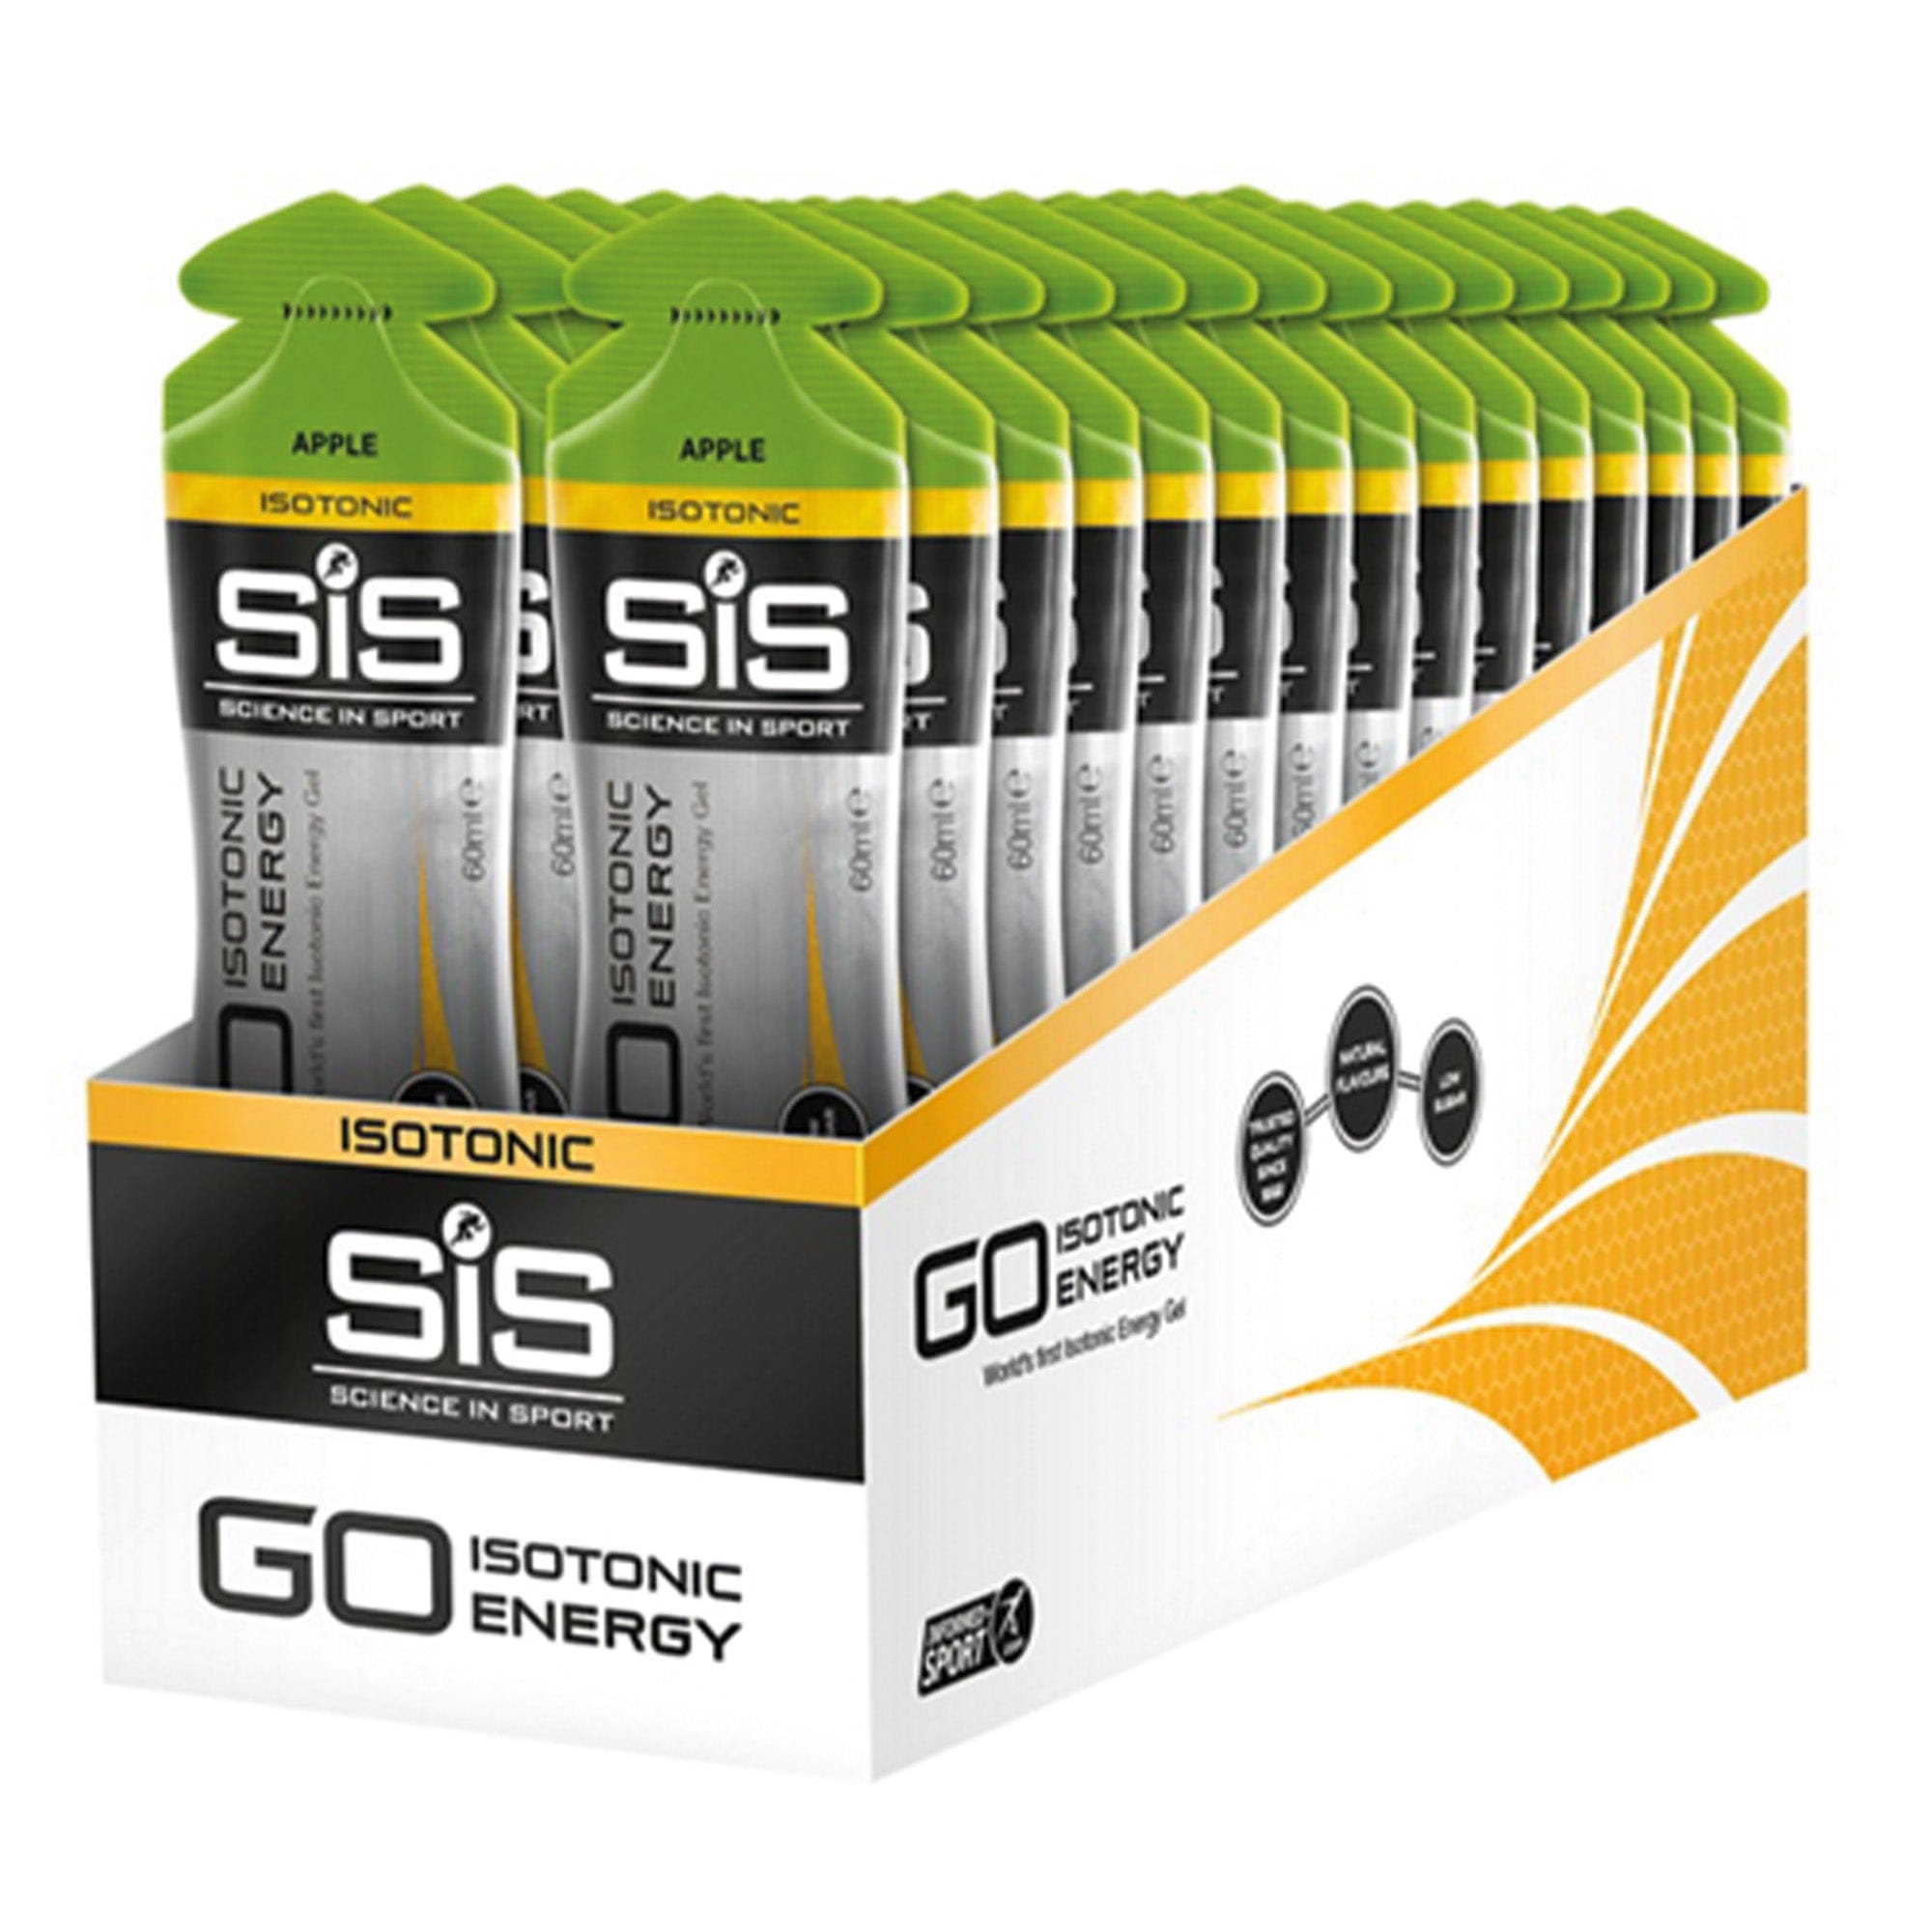 SiS Energygel Go Isotonic - Energie gel - Isotone Sportgel - Apple - 360 Gram (30 Gels)